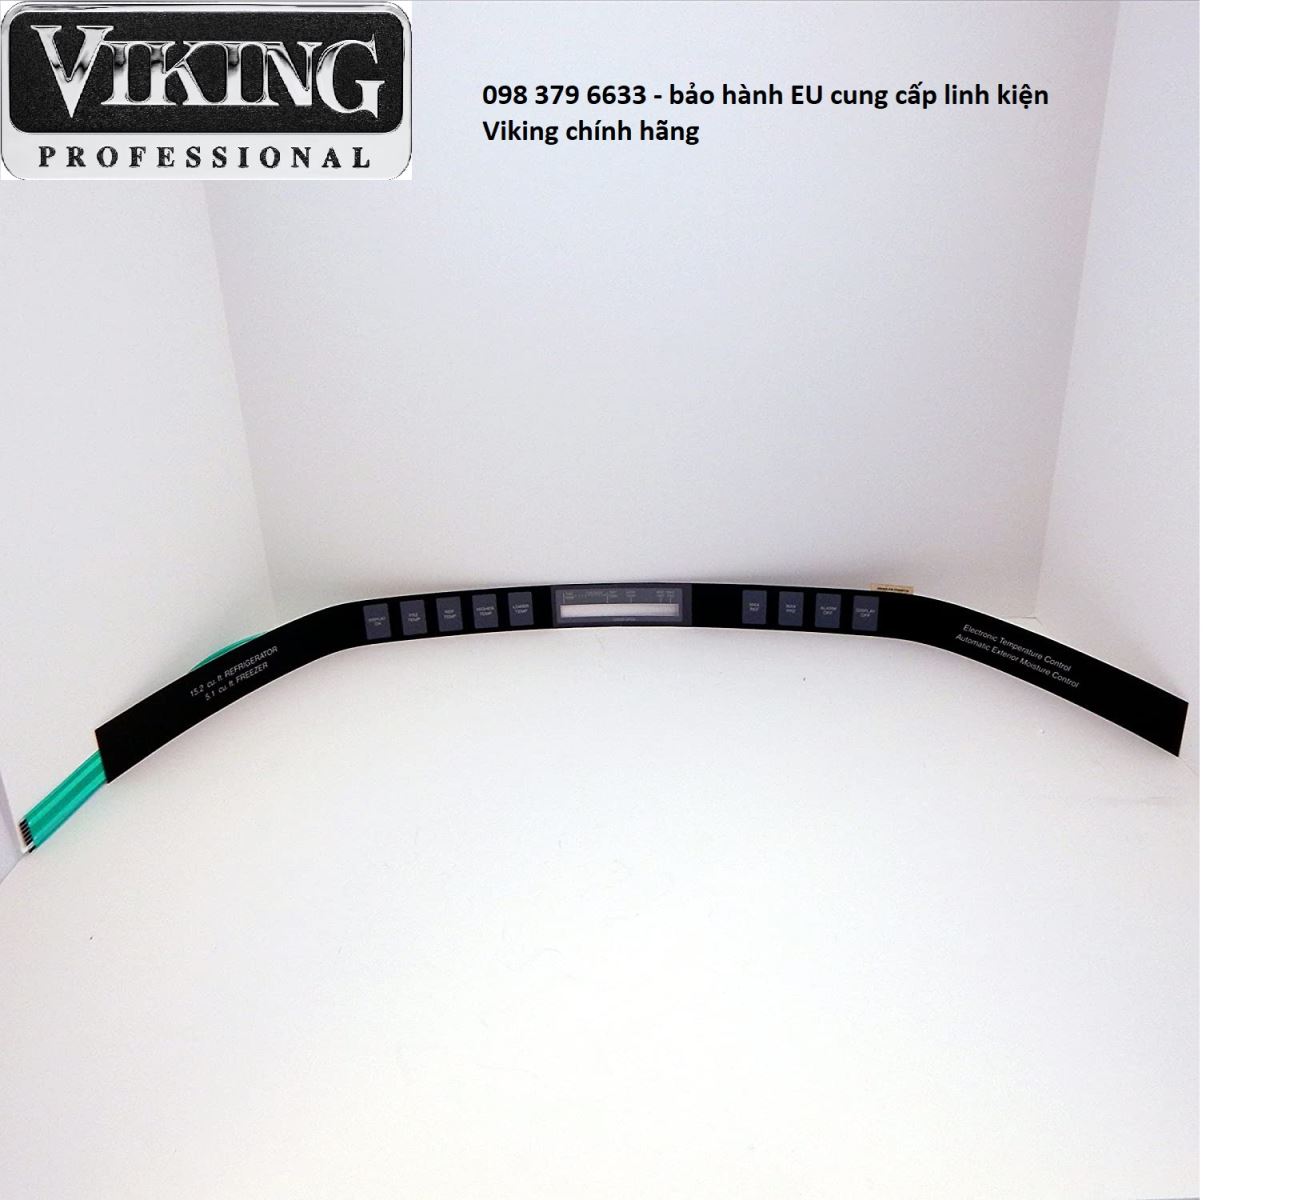 Thay bo mạch cảm ứng tủ lạnh Viking